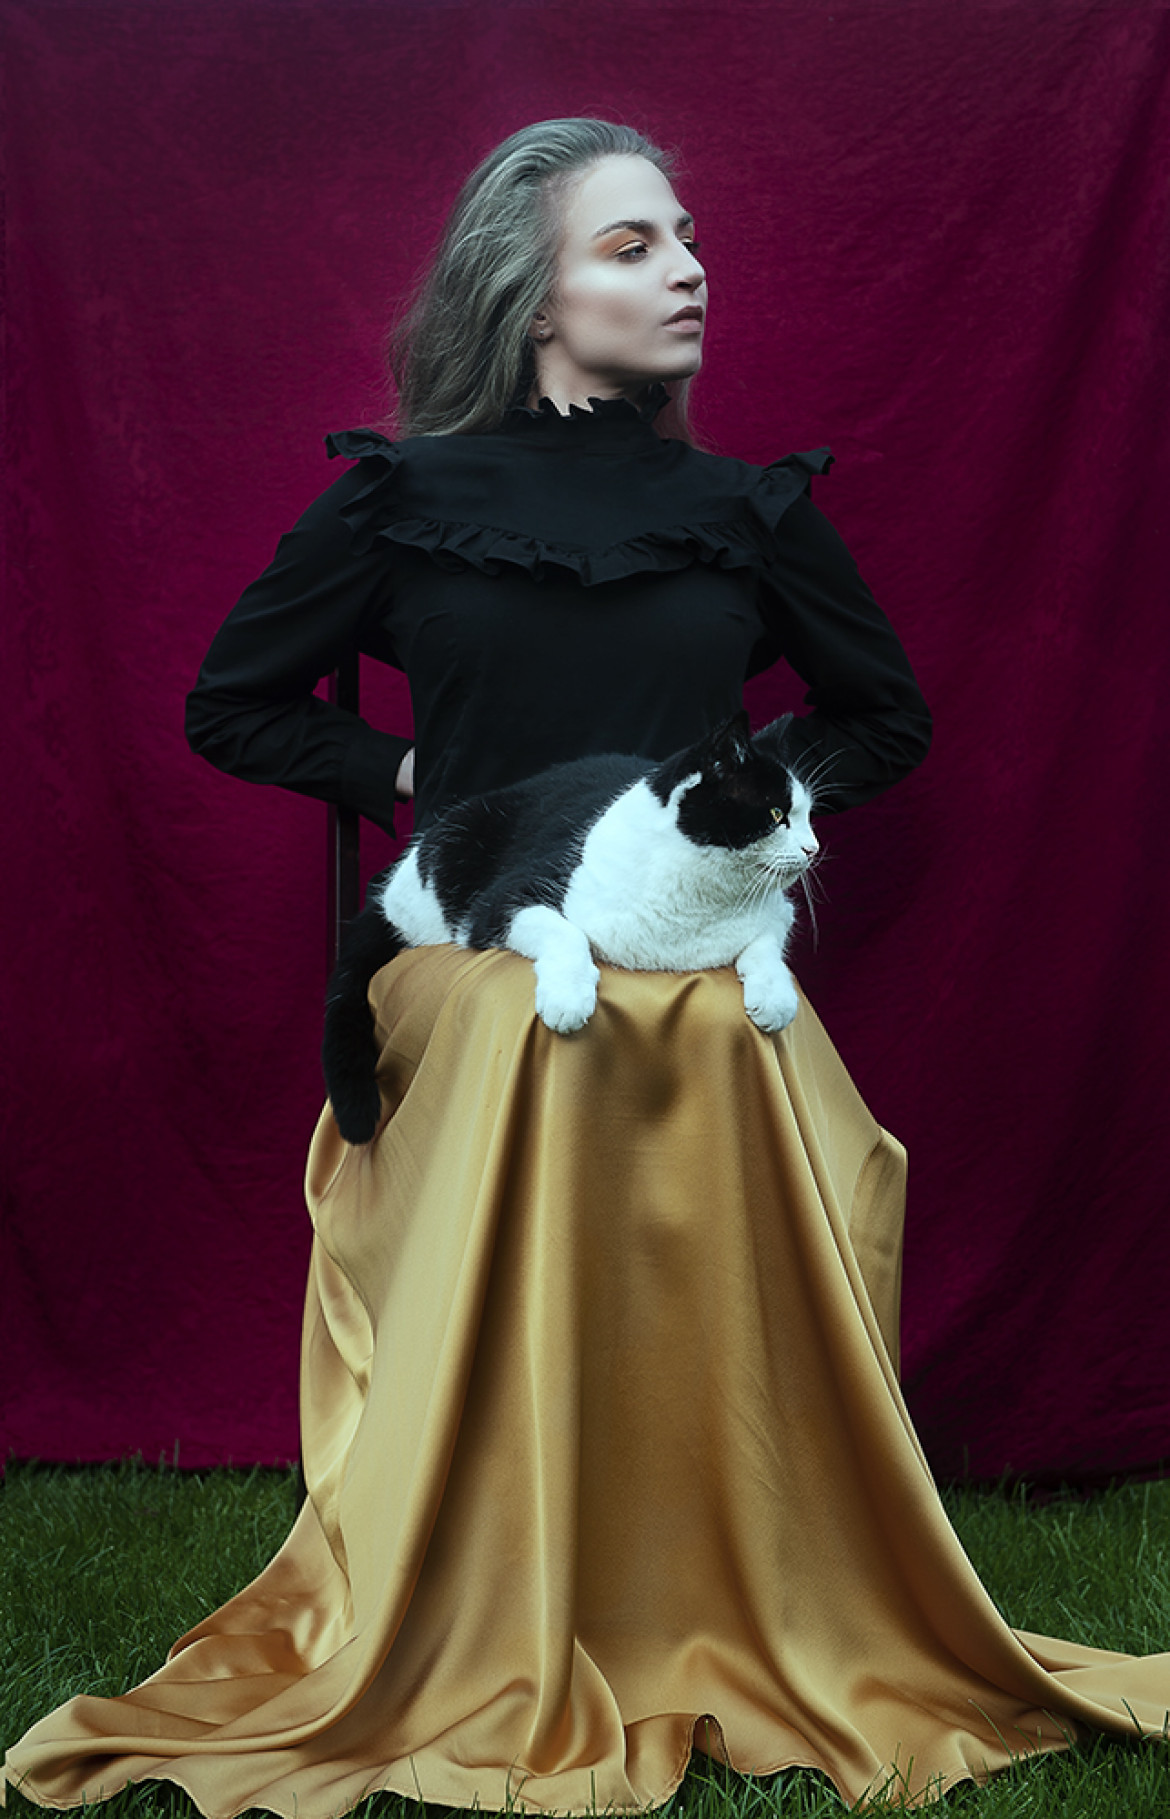 fot. Beata Bielawska-Orzechowska, nominacja w kat. Portrait, "Miss with a cat"